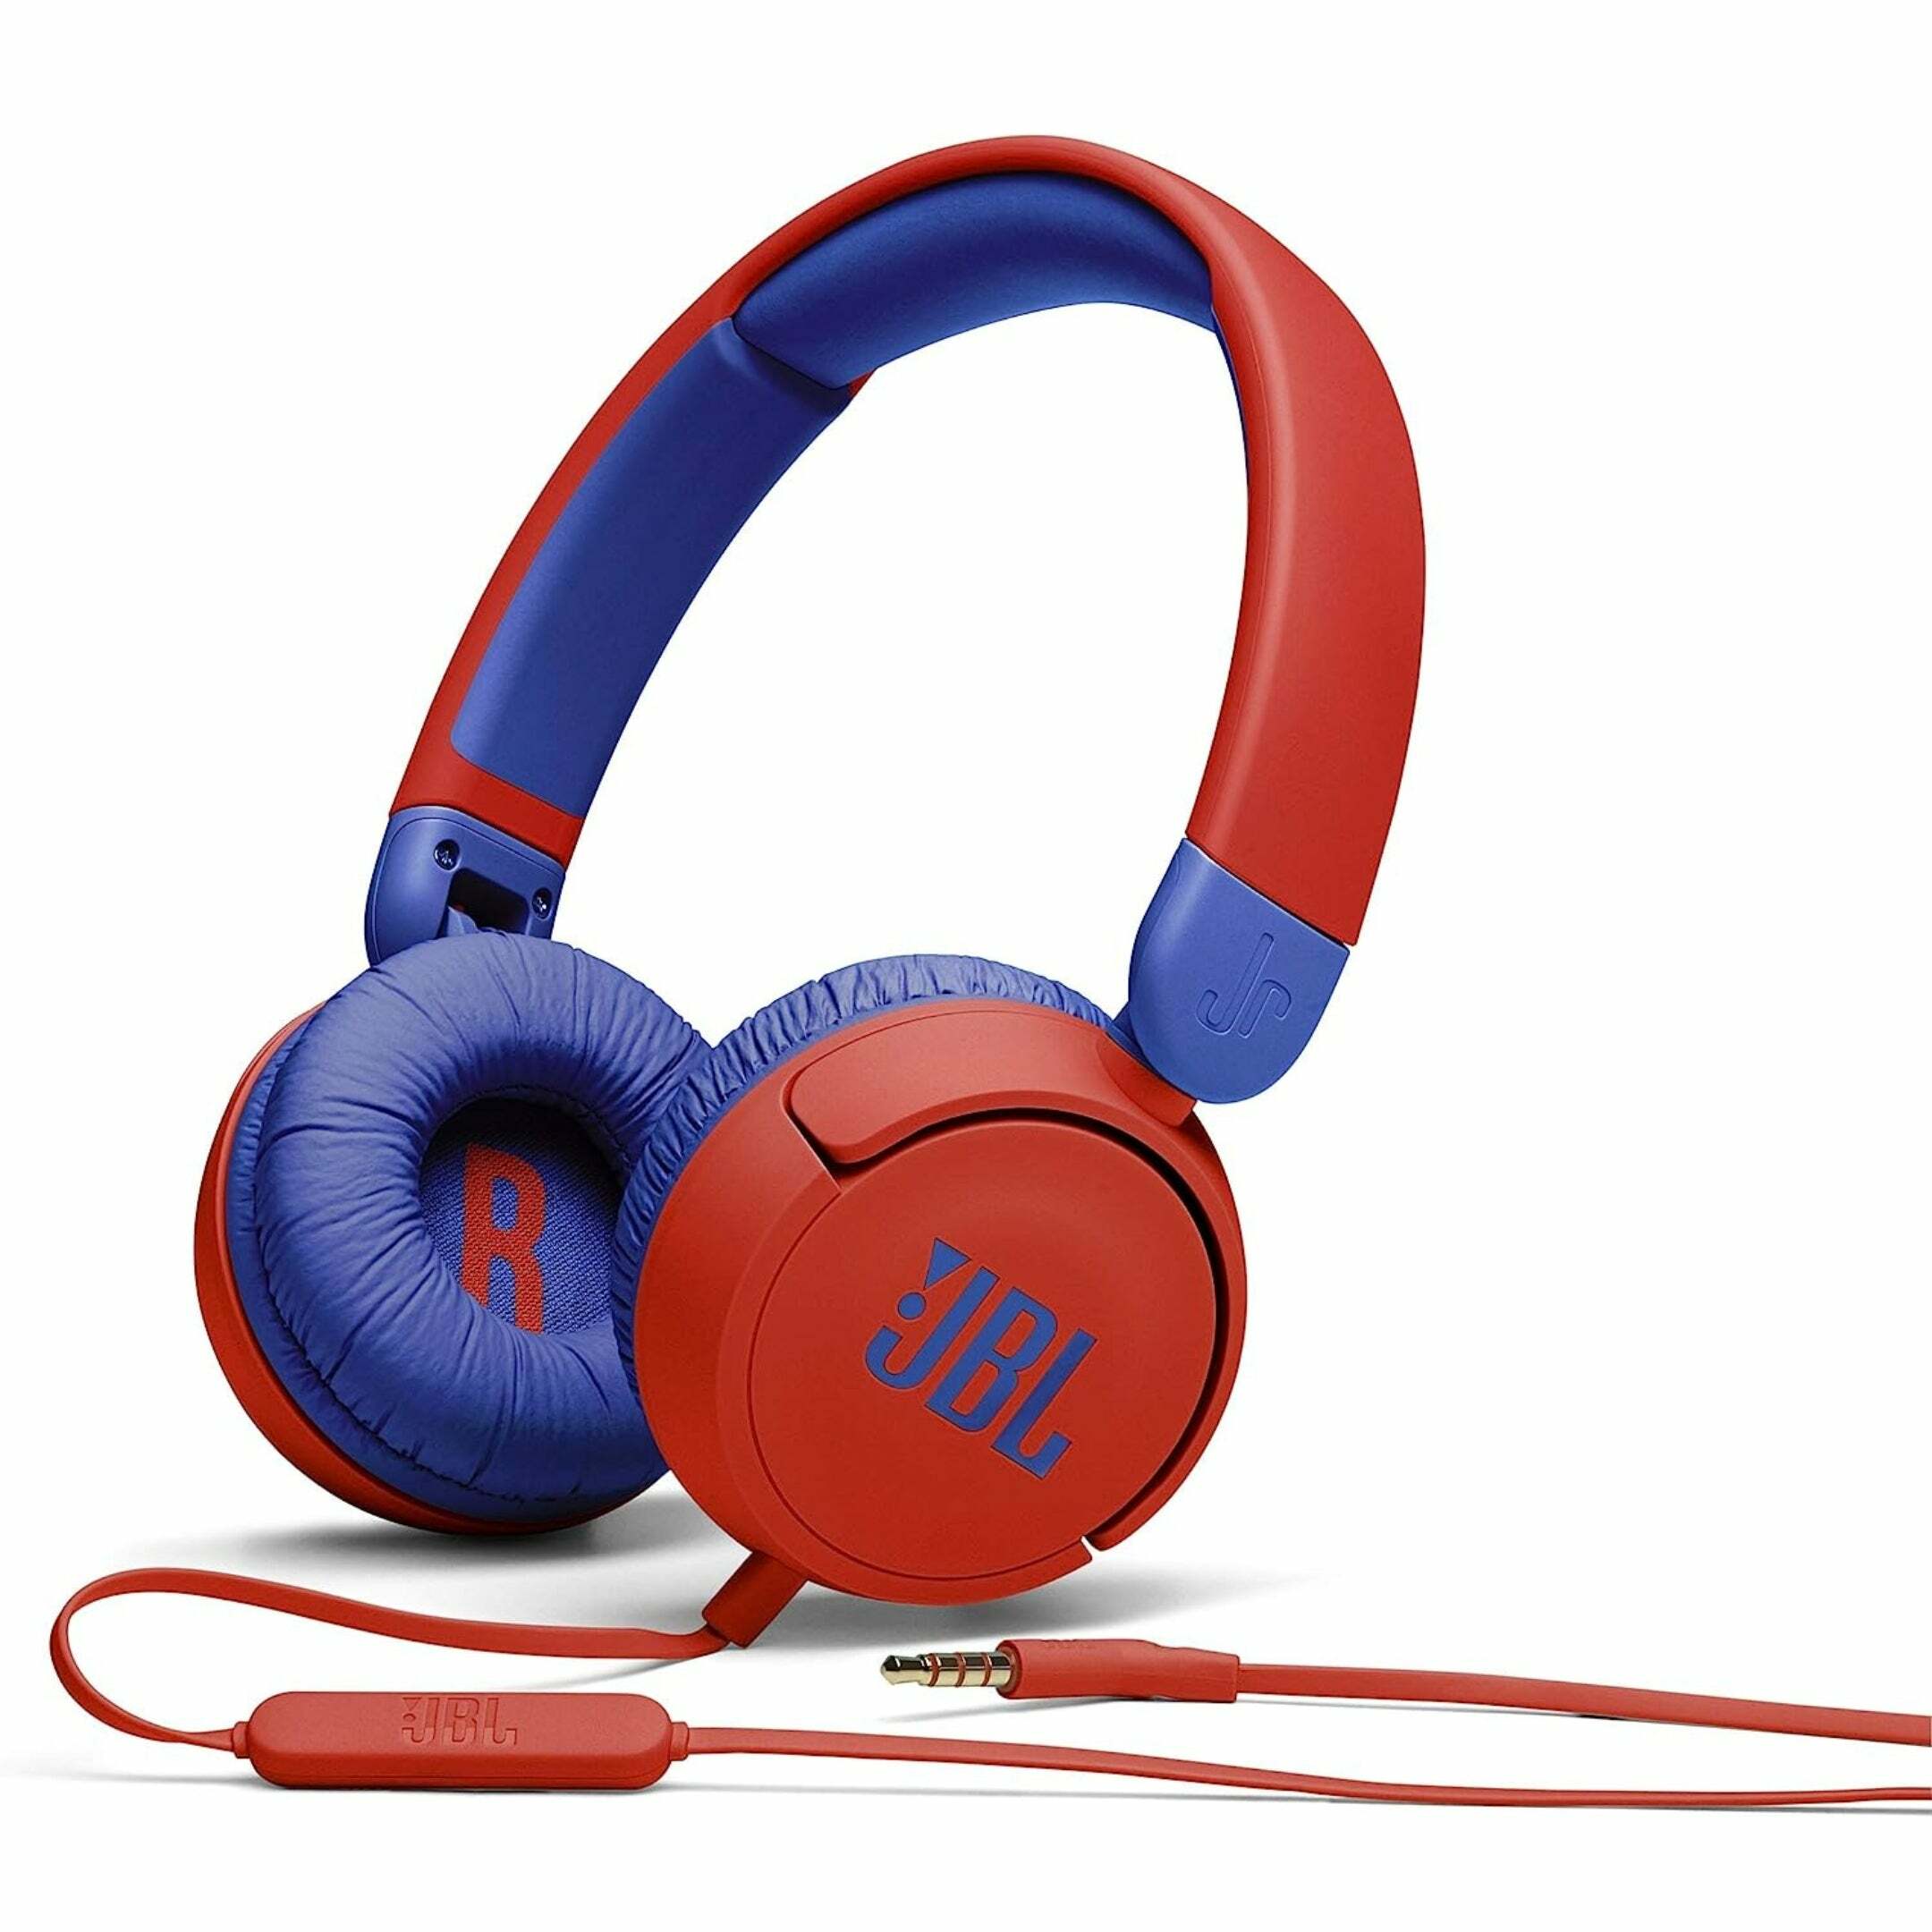 JBL JR 310 - Kids On-Ear Wired Headphones w/ Mic Red/Blue